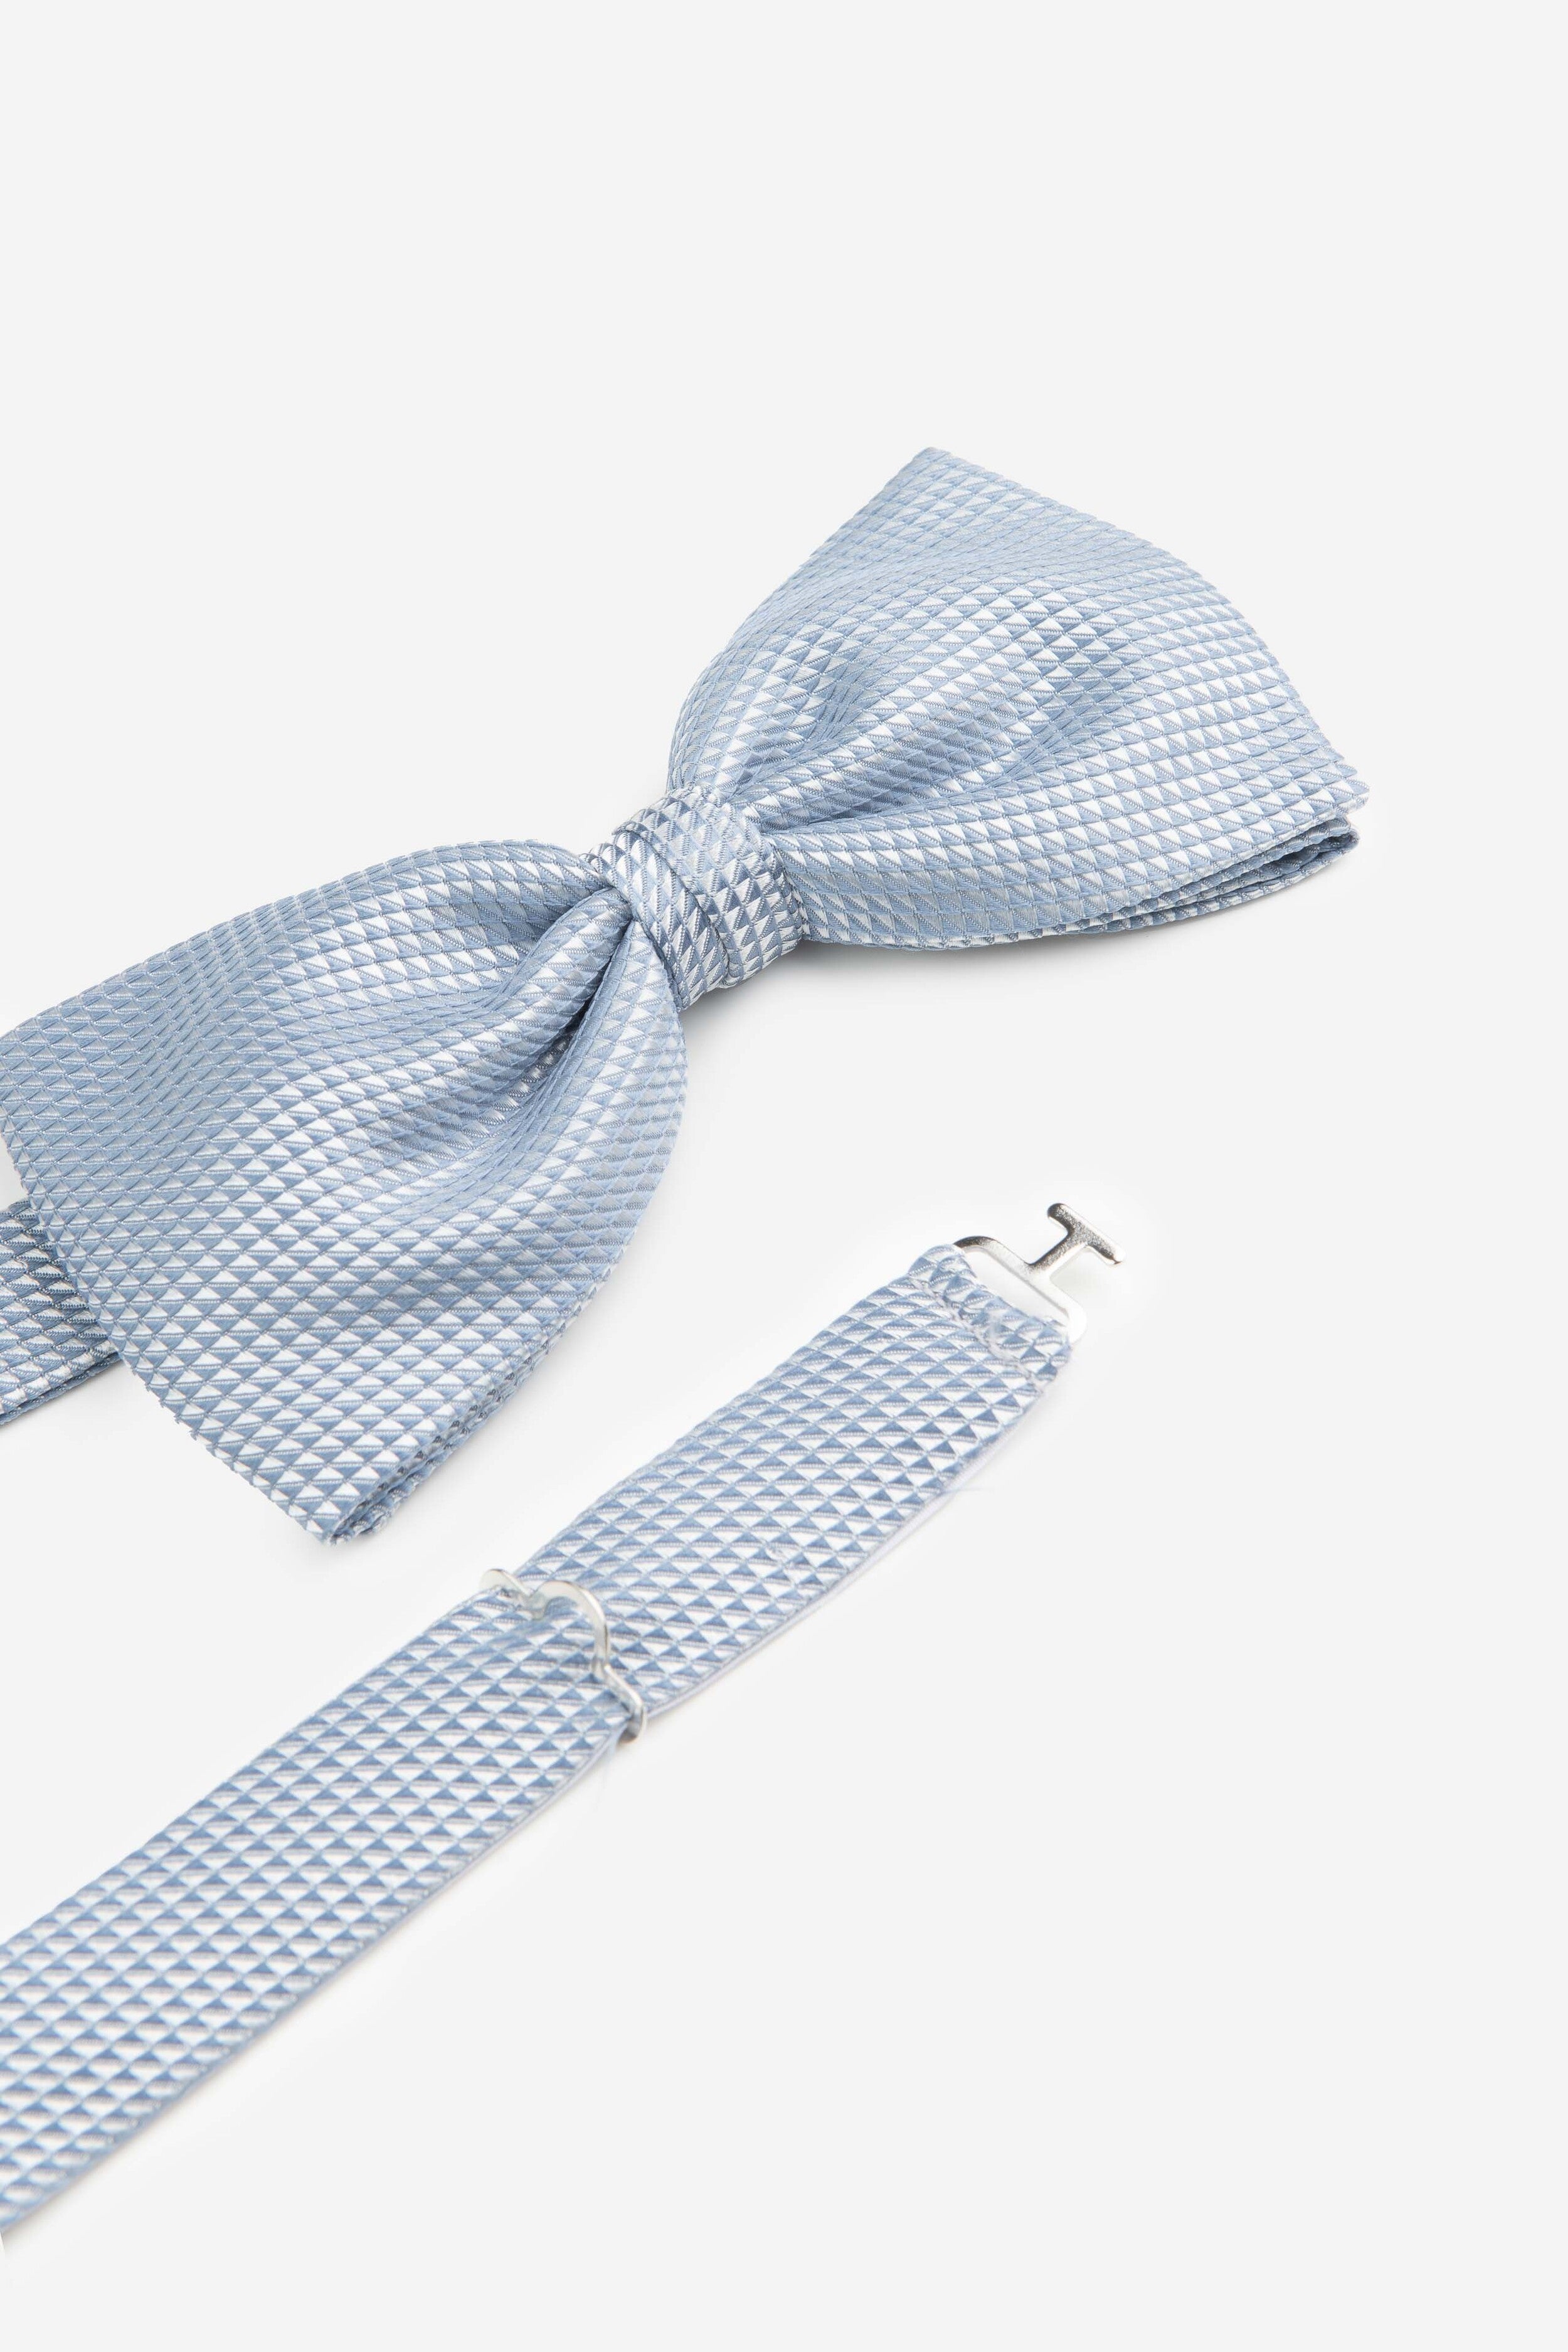 Ptterned bow tie - Light blue pattern